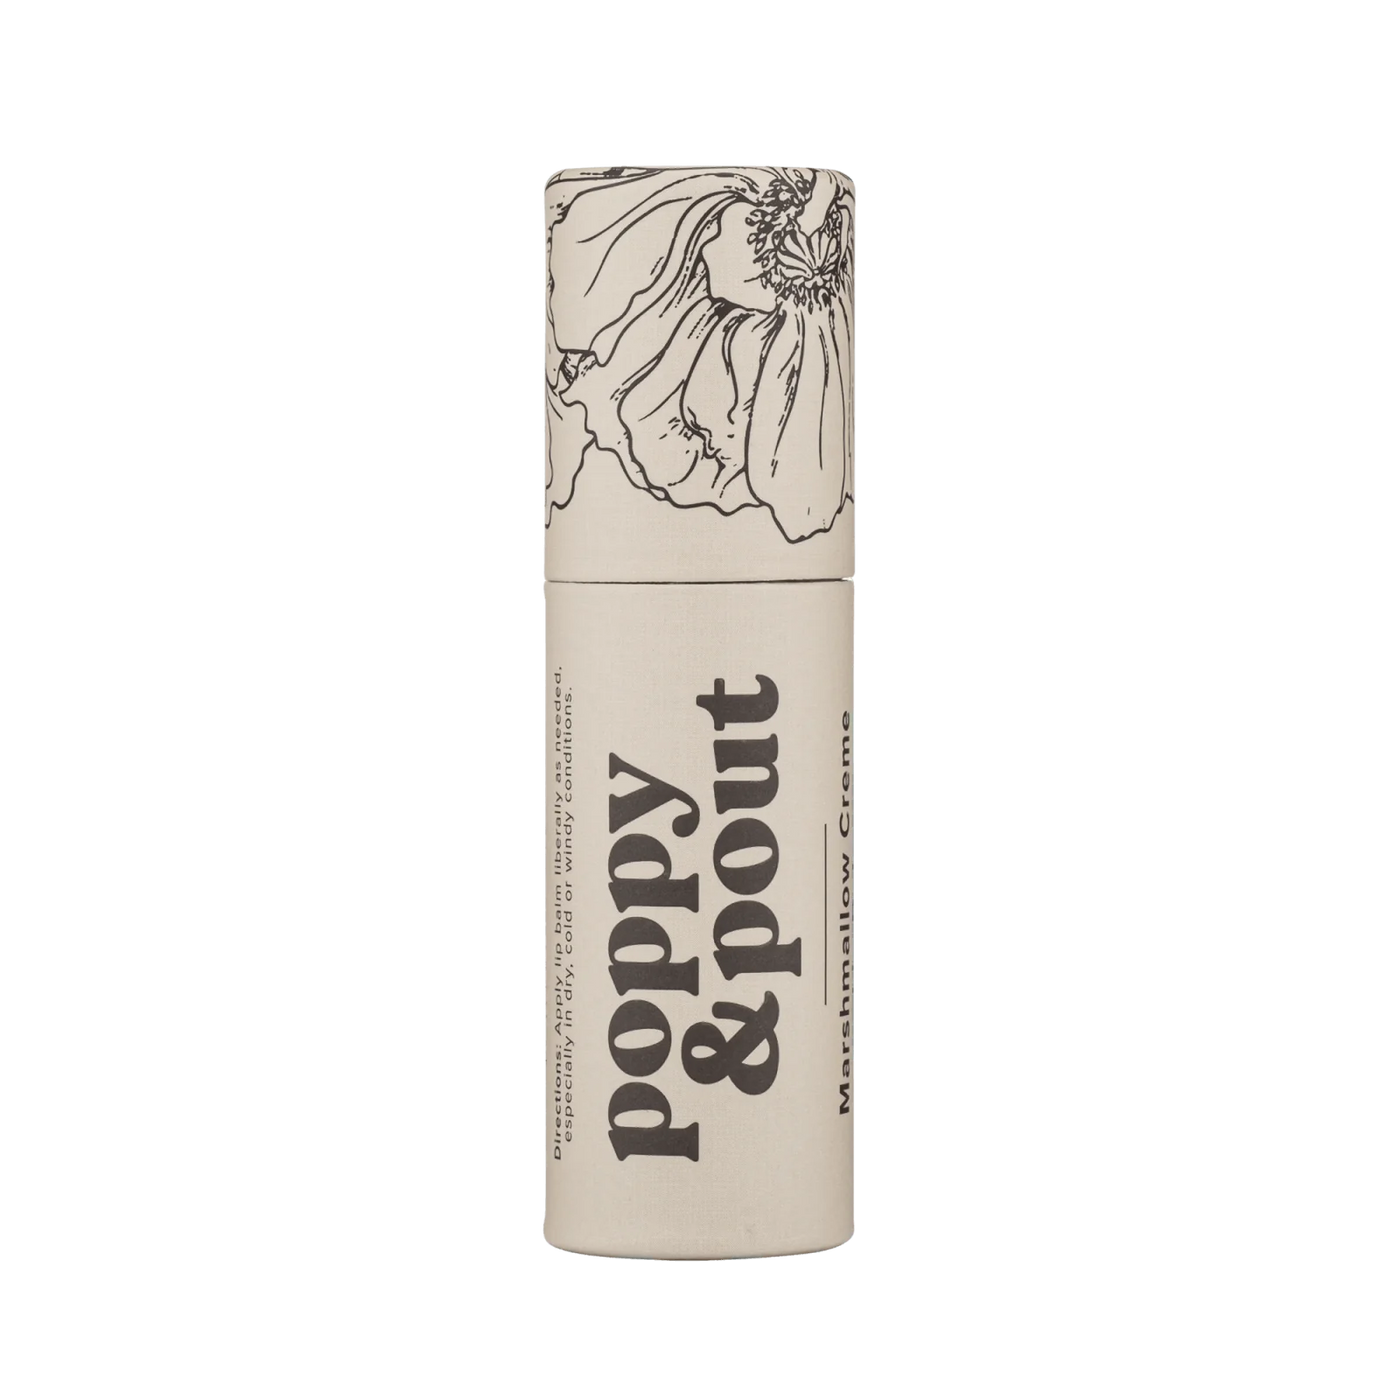 Poppy & Pout Lip Balm - Marshmallow Creme